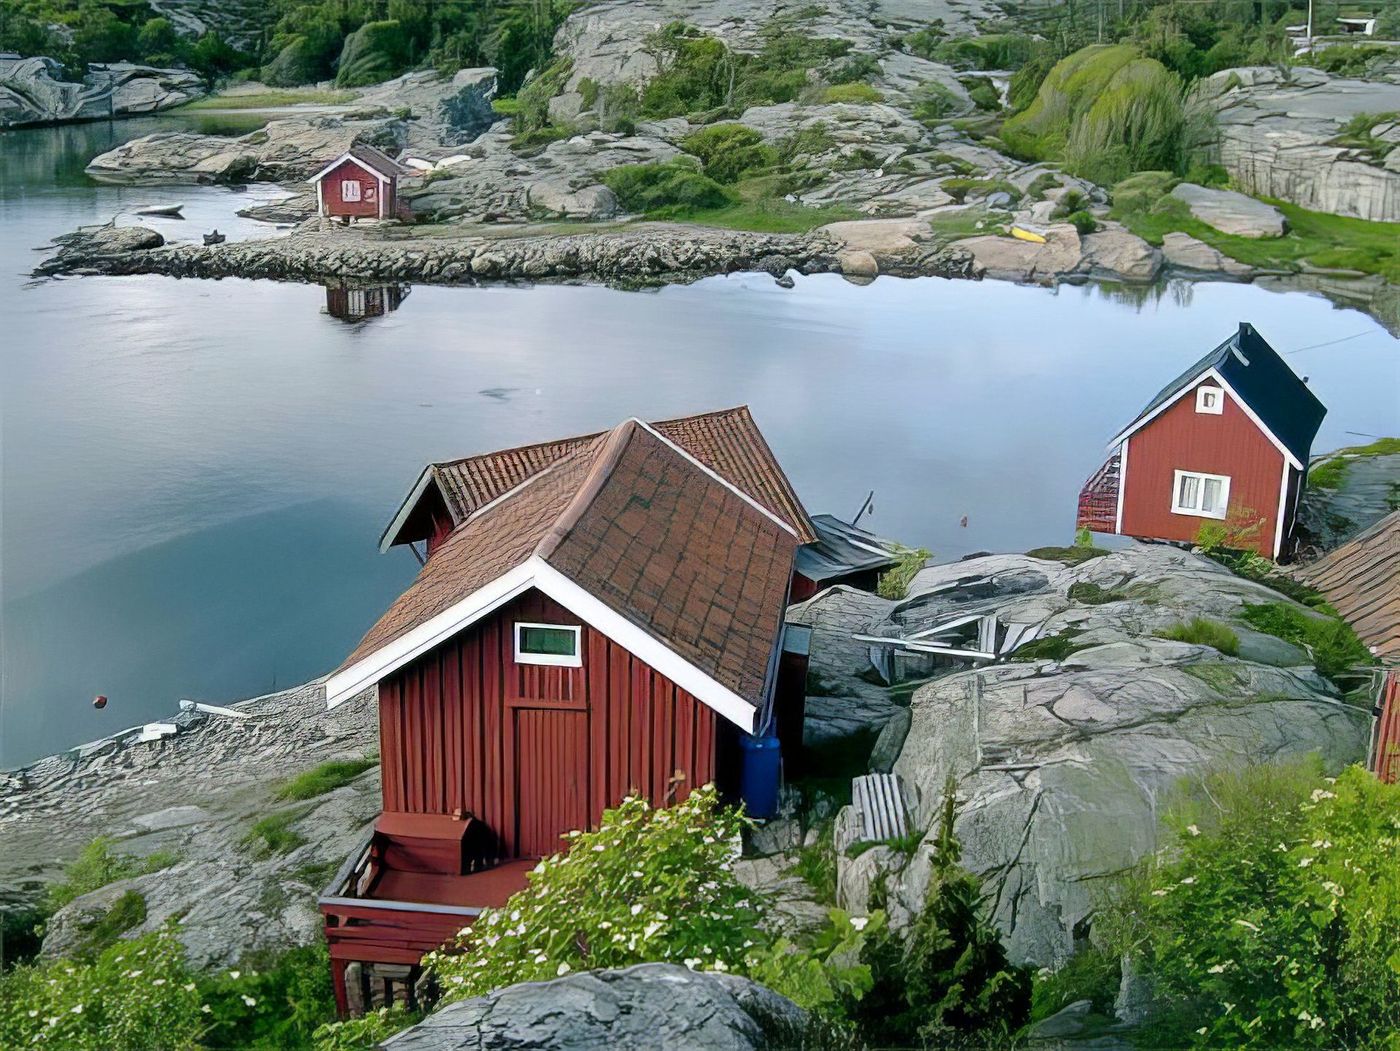 Paysage typique du sud de la Norvège